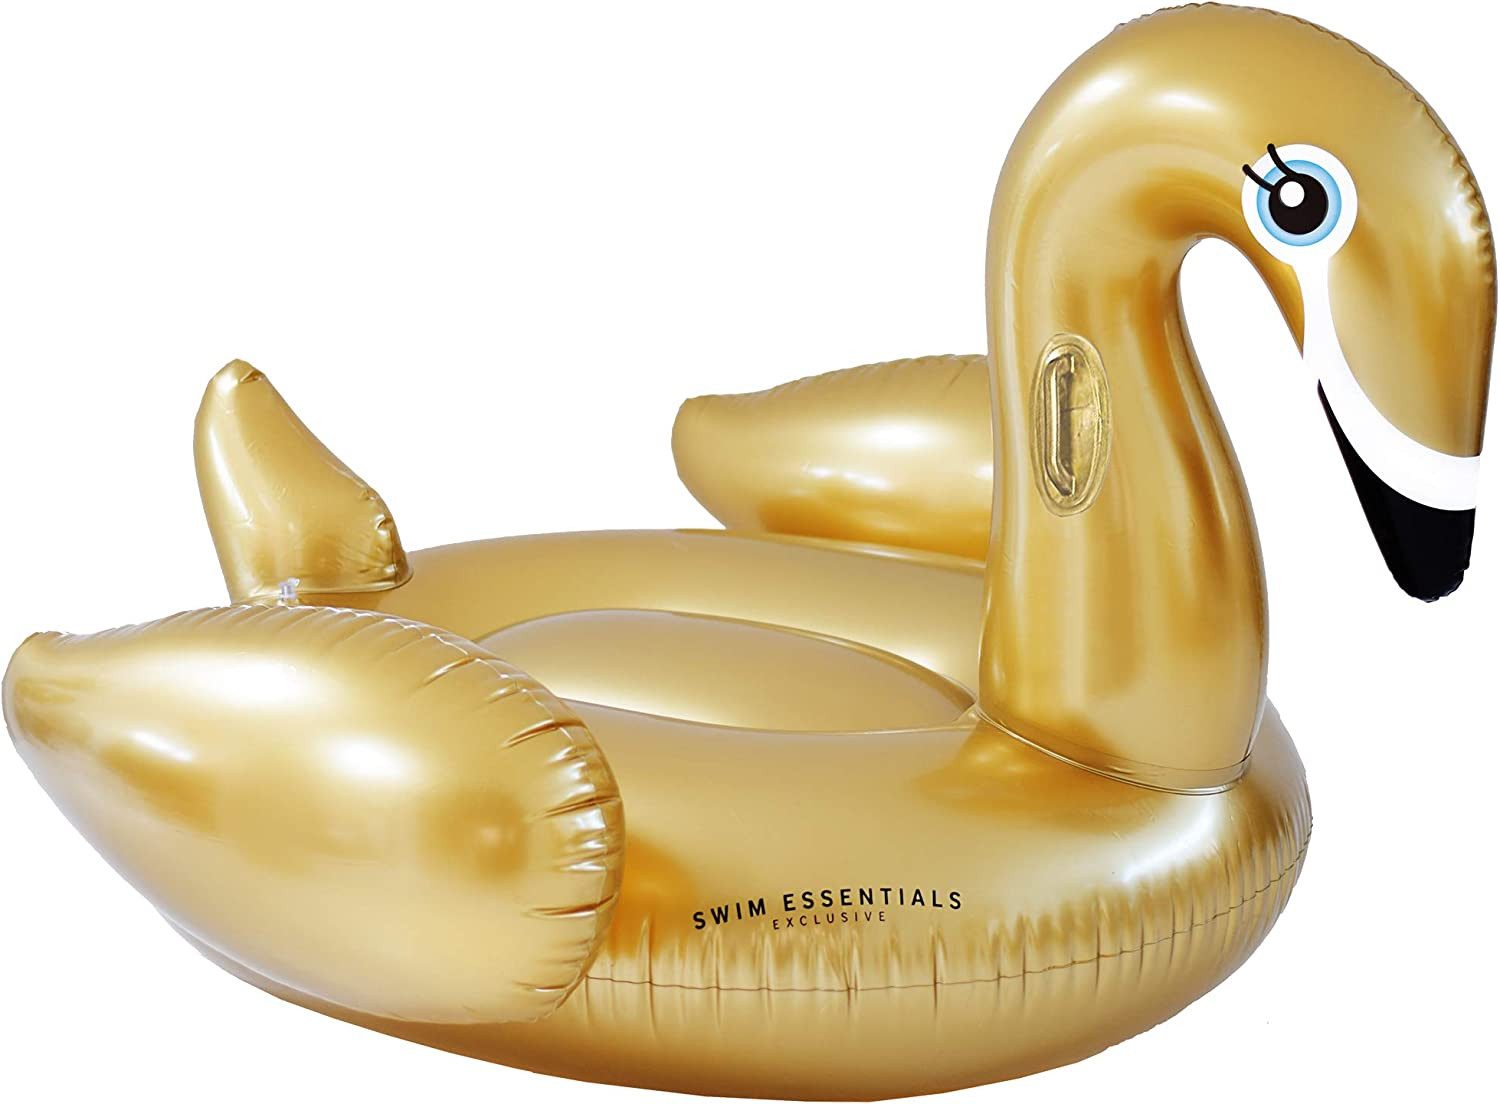 Swim Essentials Luftmatratze Swim Essentials Luxury Ride-on Schwan Gold 142x 137 x 97 cm